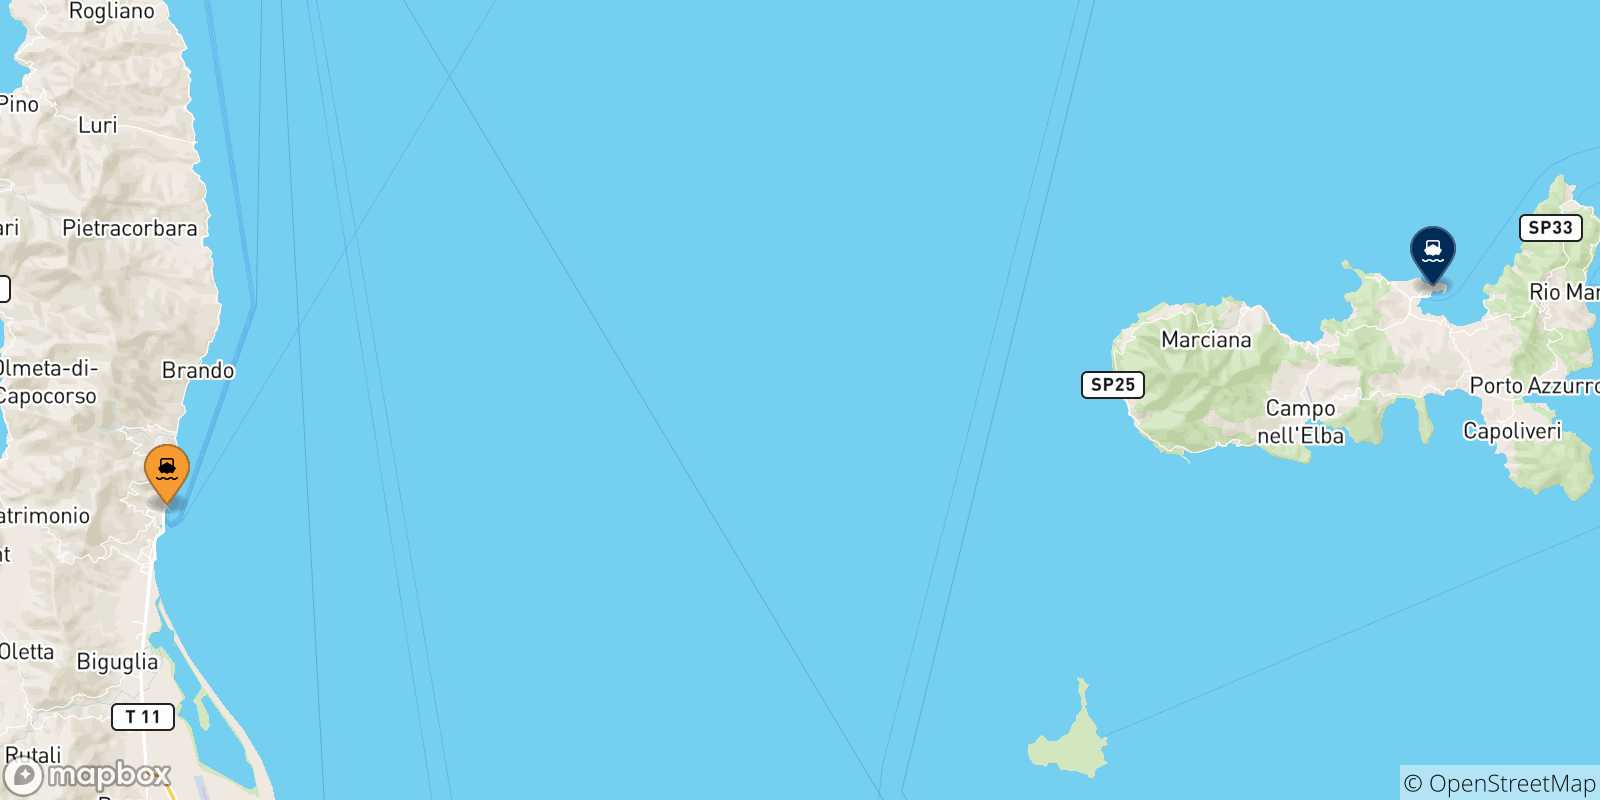 Mappa delle possibili rotte tra la Corsica e l'Isola D'elba